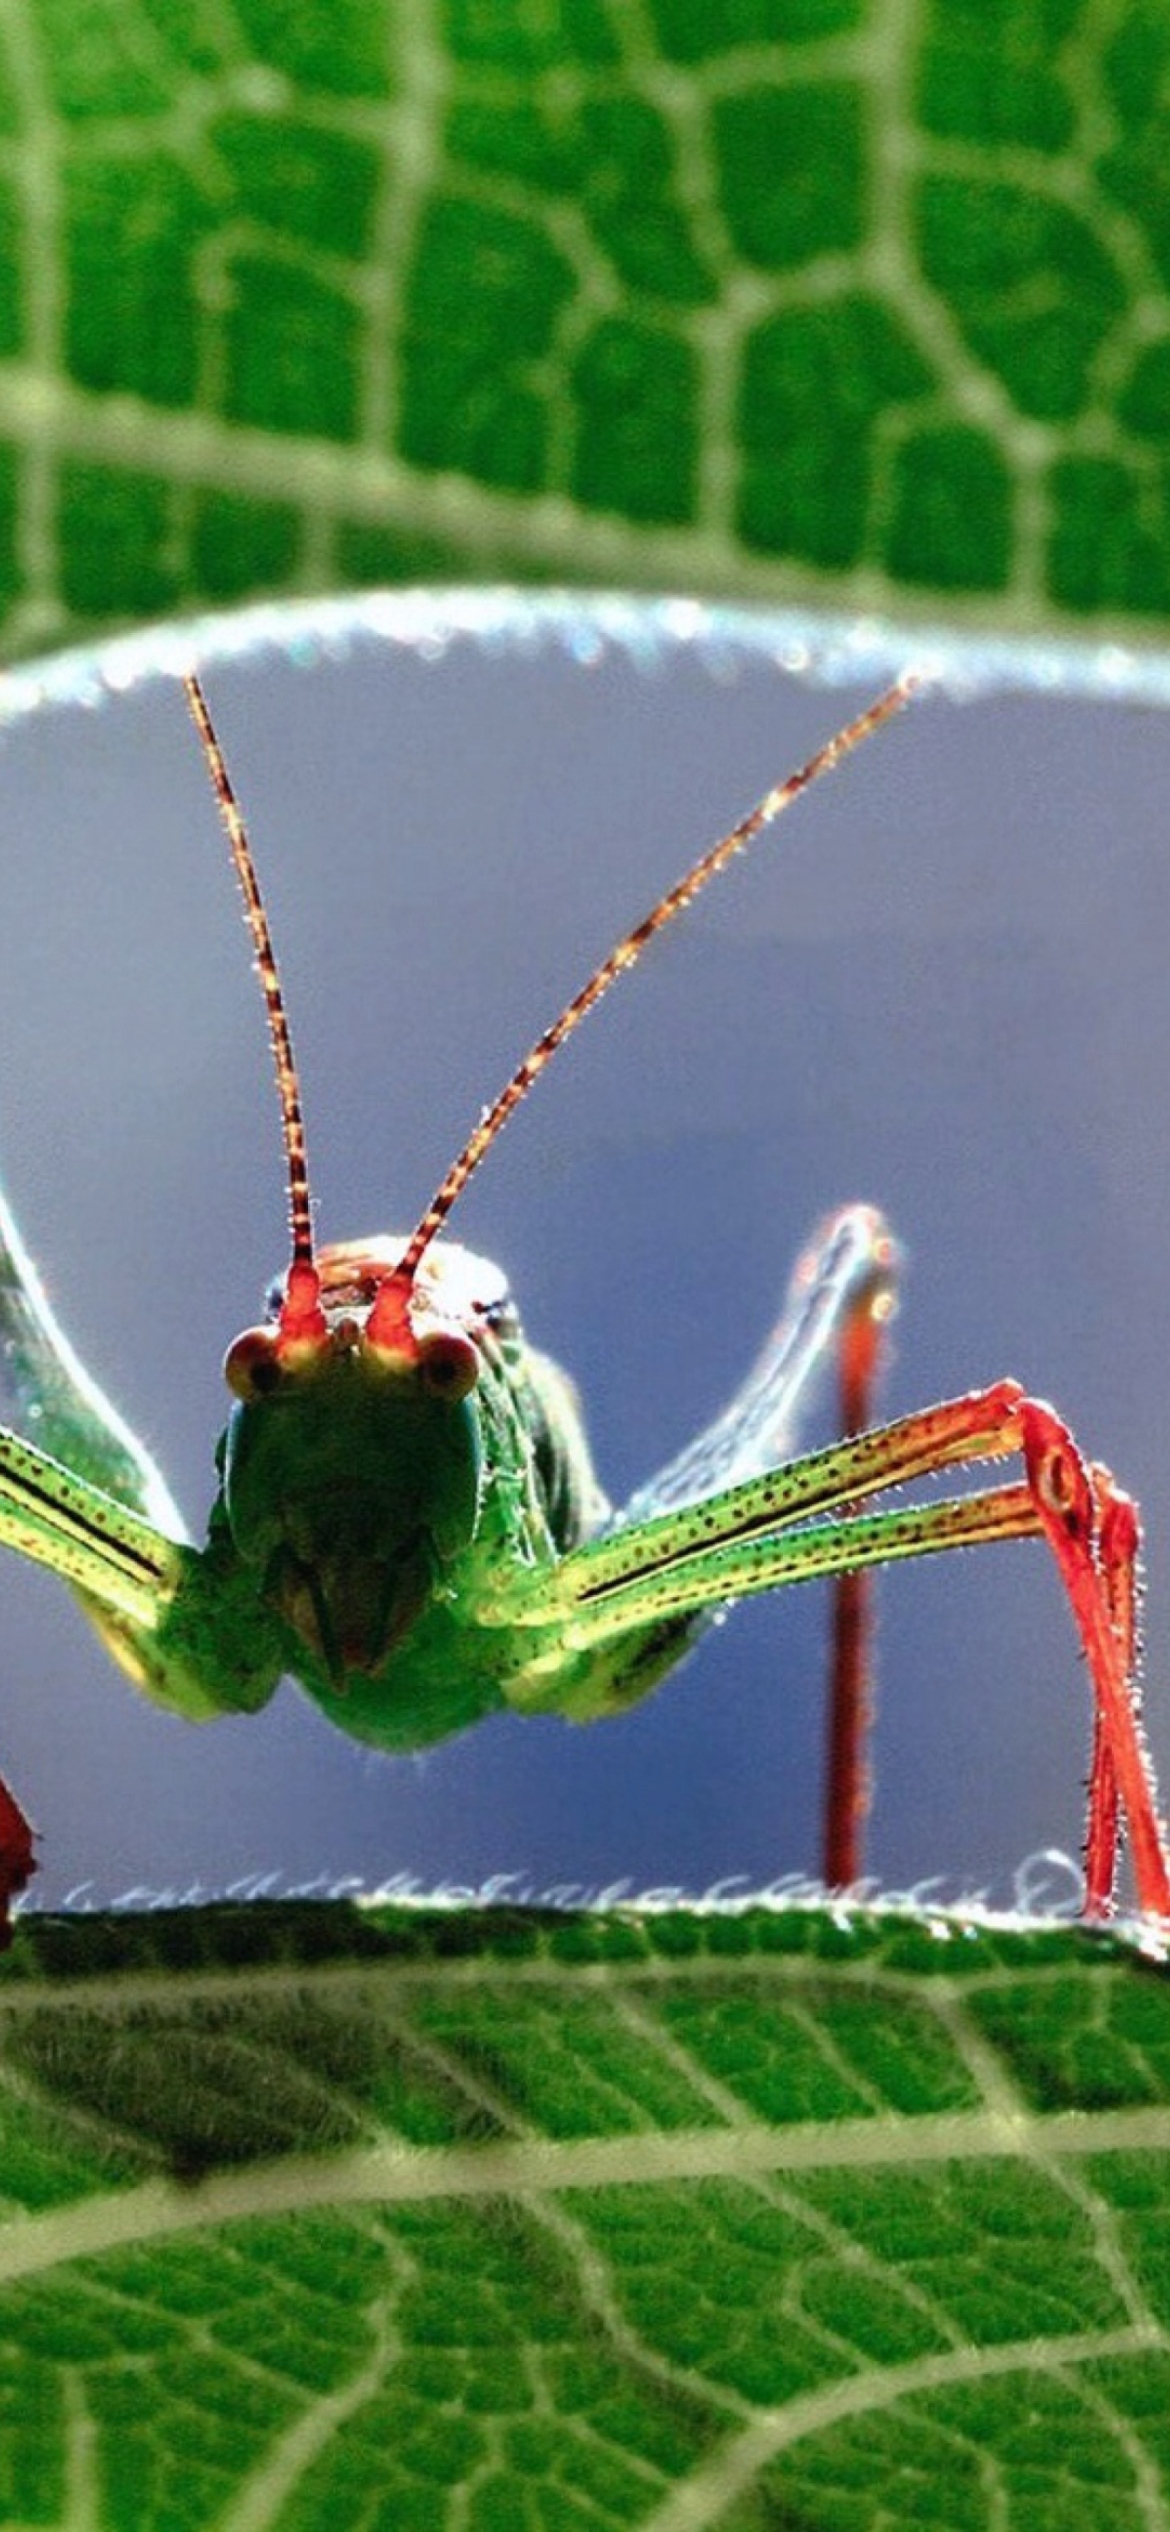 Das Grasshopper Wallpaper 1170x2532